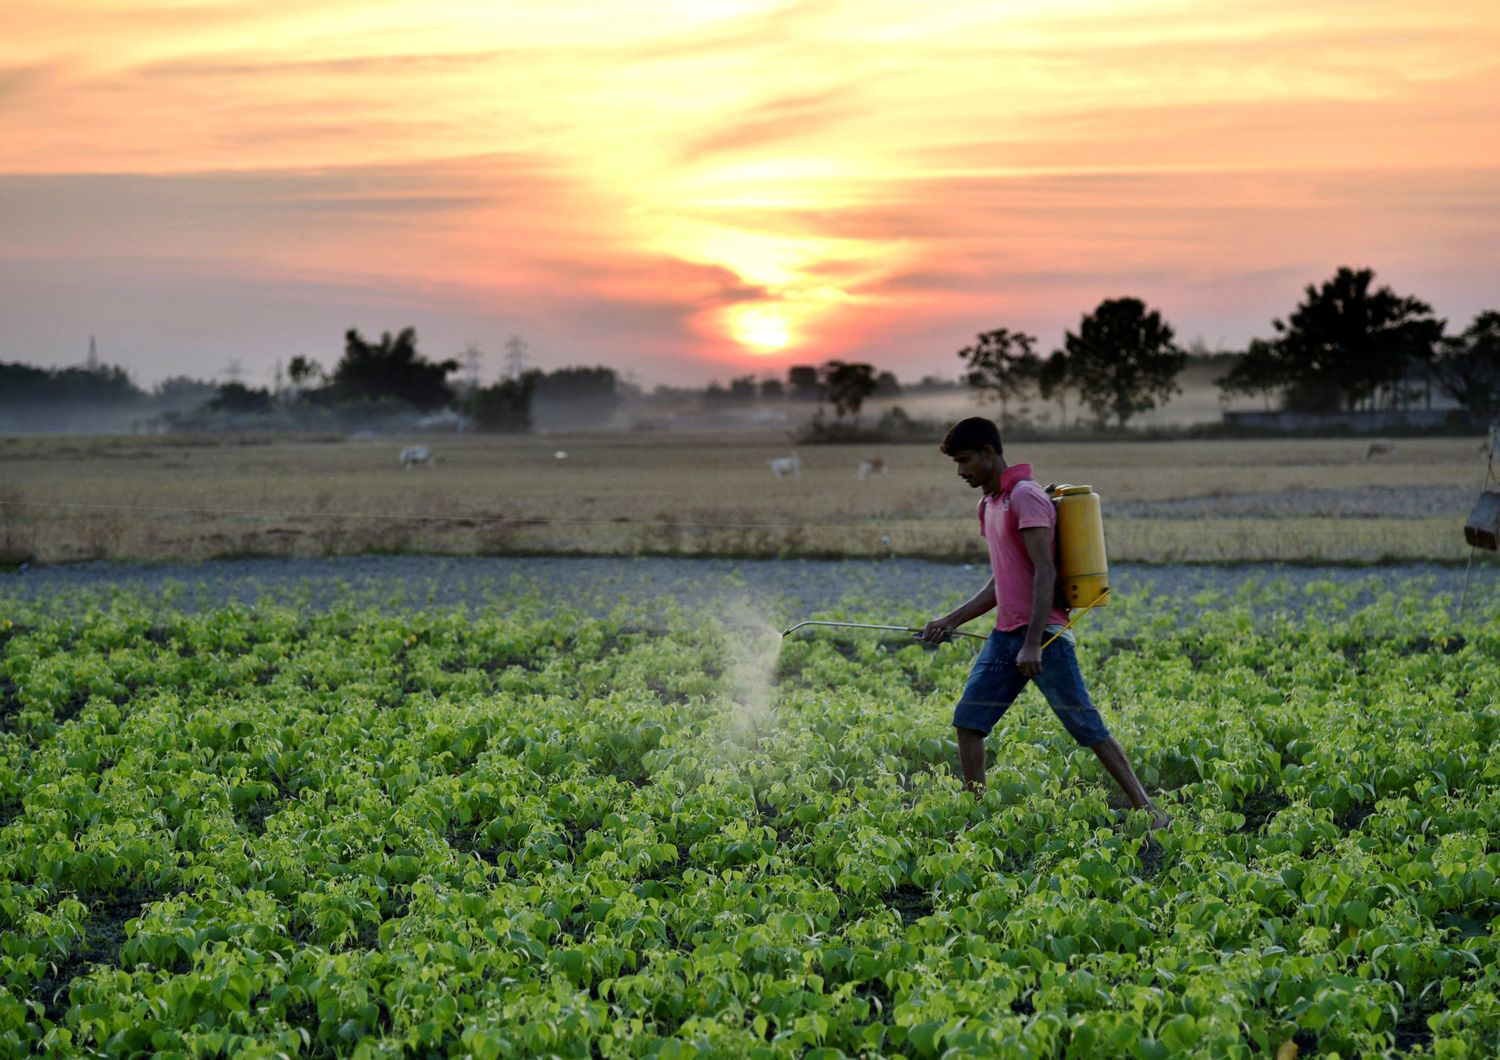 Pesticidi in agricoltura